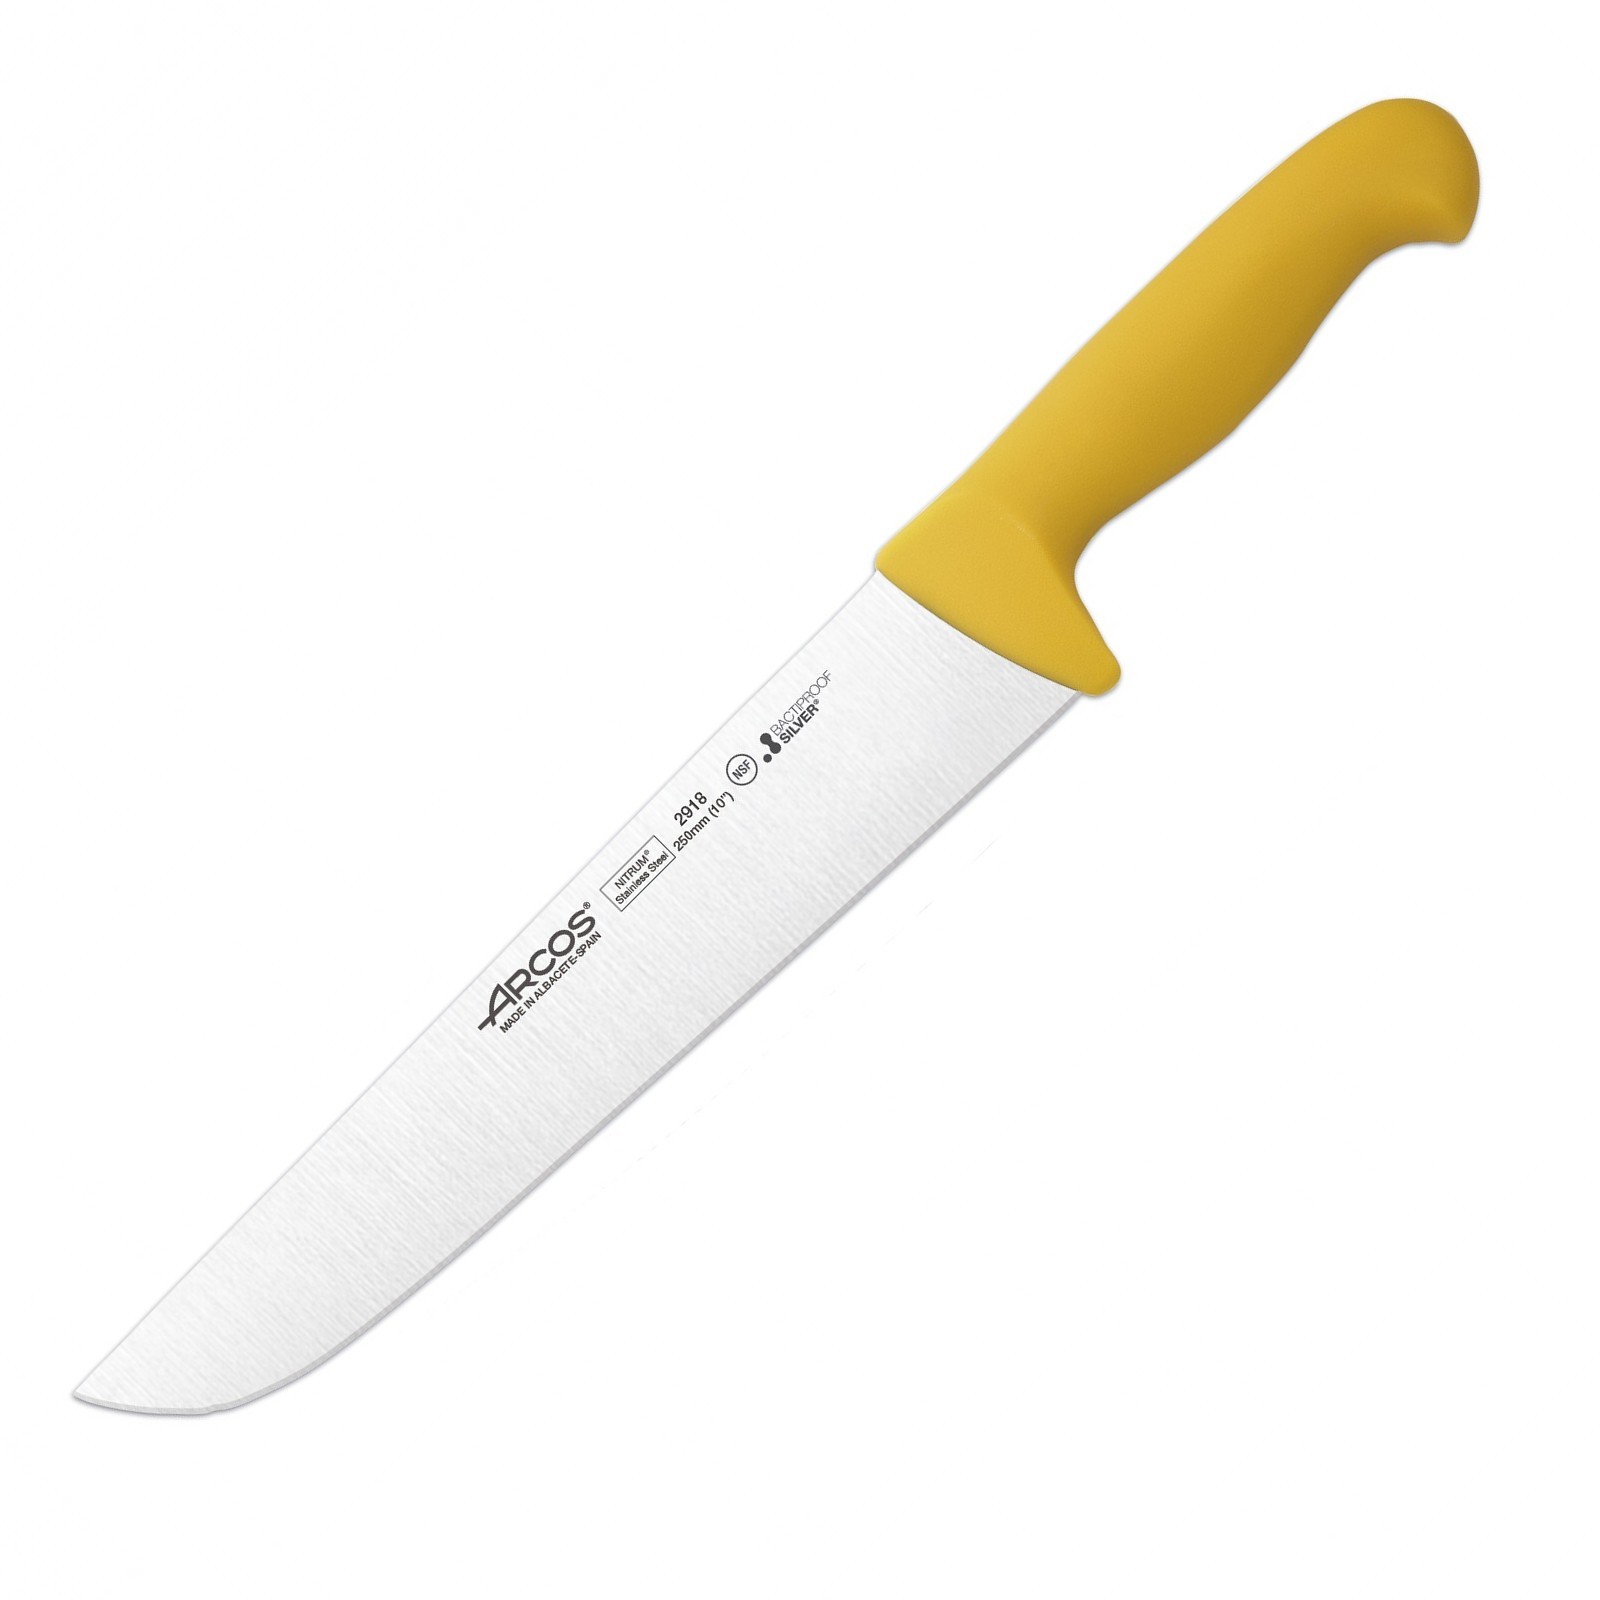 Нож для разделки 2900 2918, 250 мм, желтый